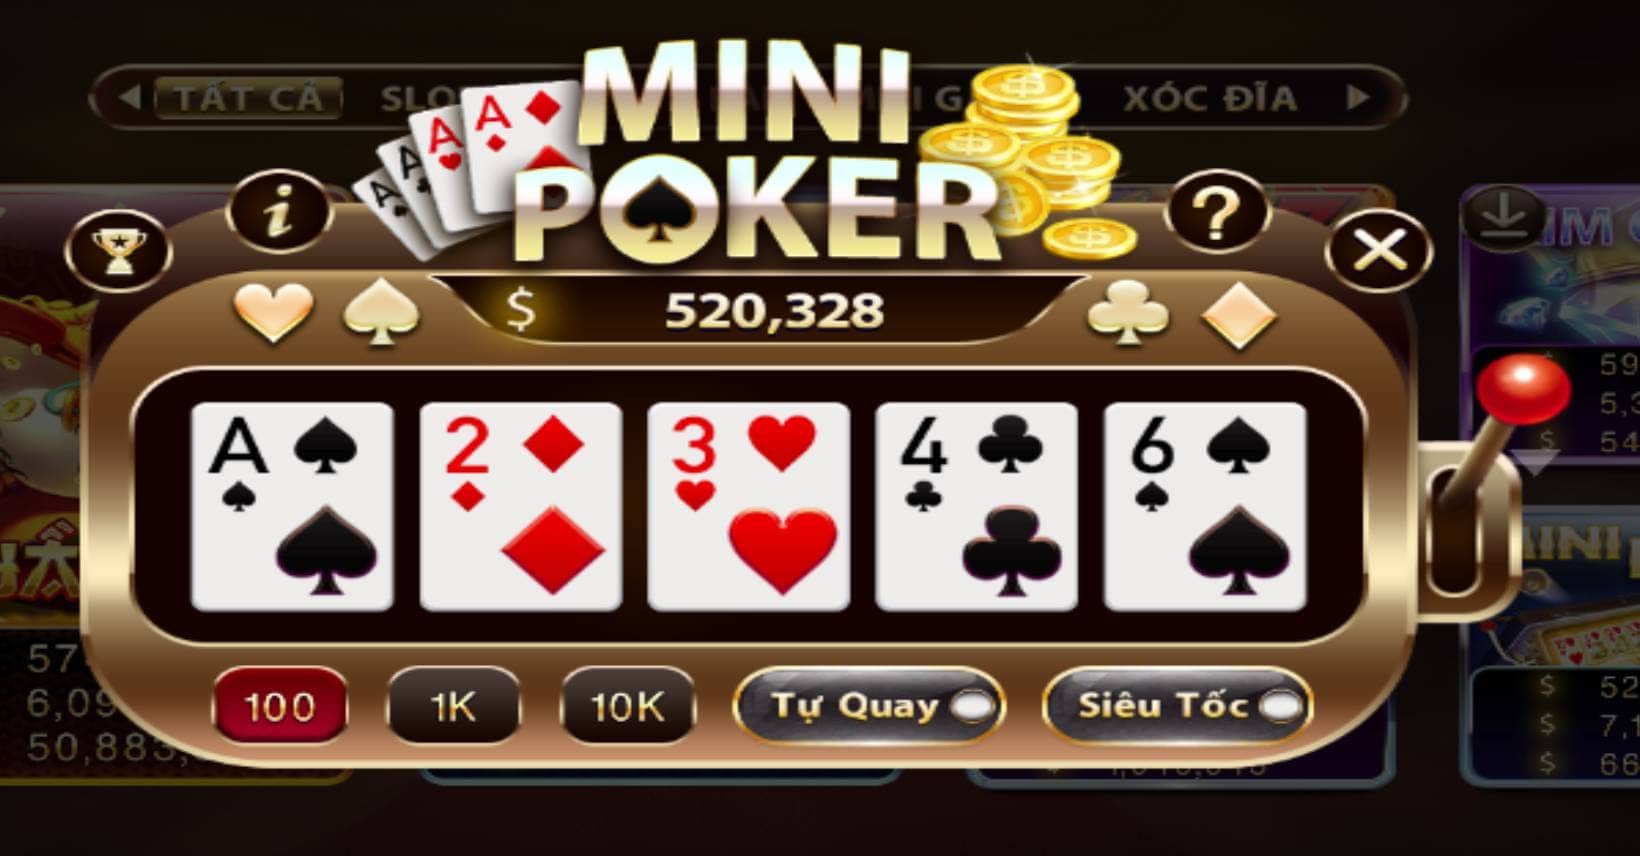 Giai ma game no hu Mini Poker Sunwin an hu 49 000 000